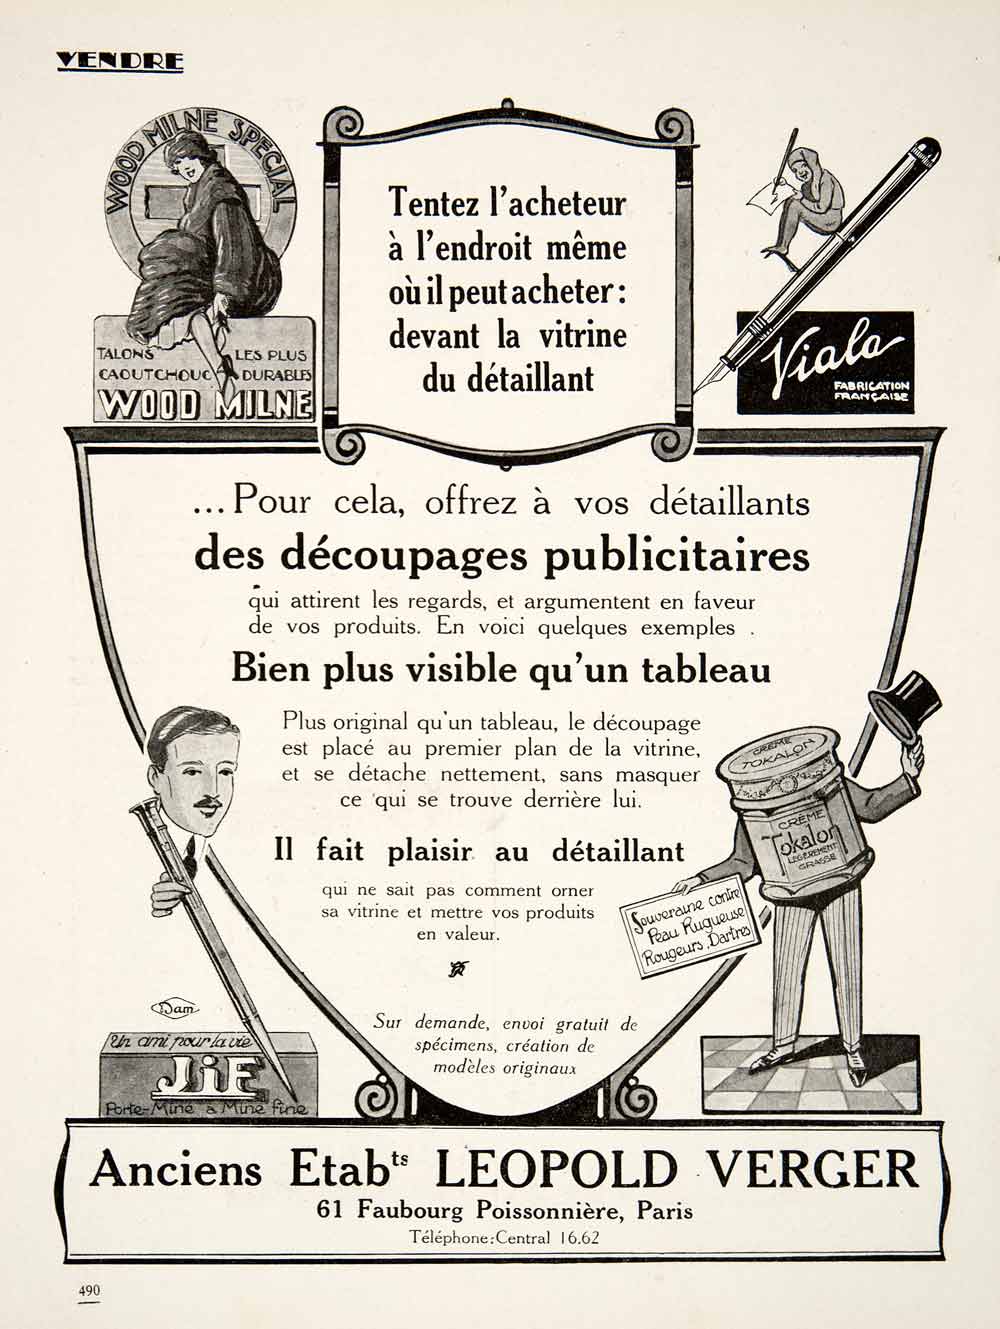 1924 Ad Leopold Verger 61 Faubourg Poissonniere Paris Wood Milne Viala VEN3